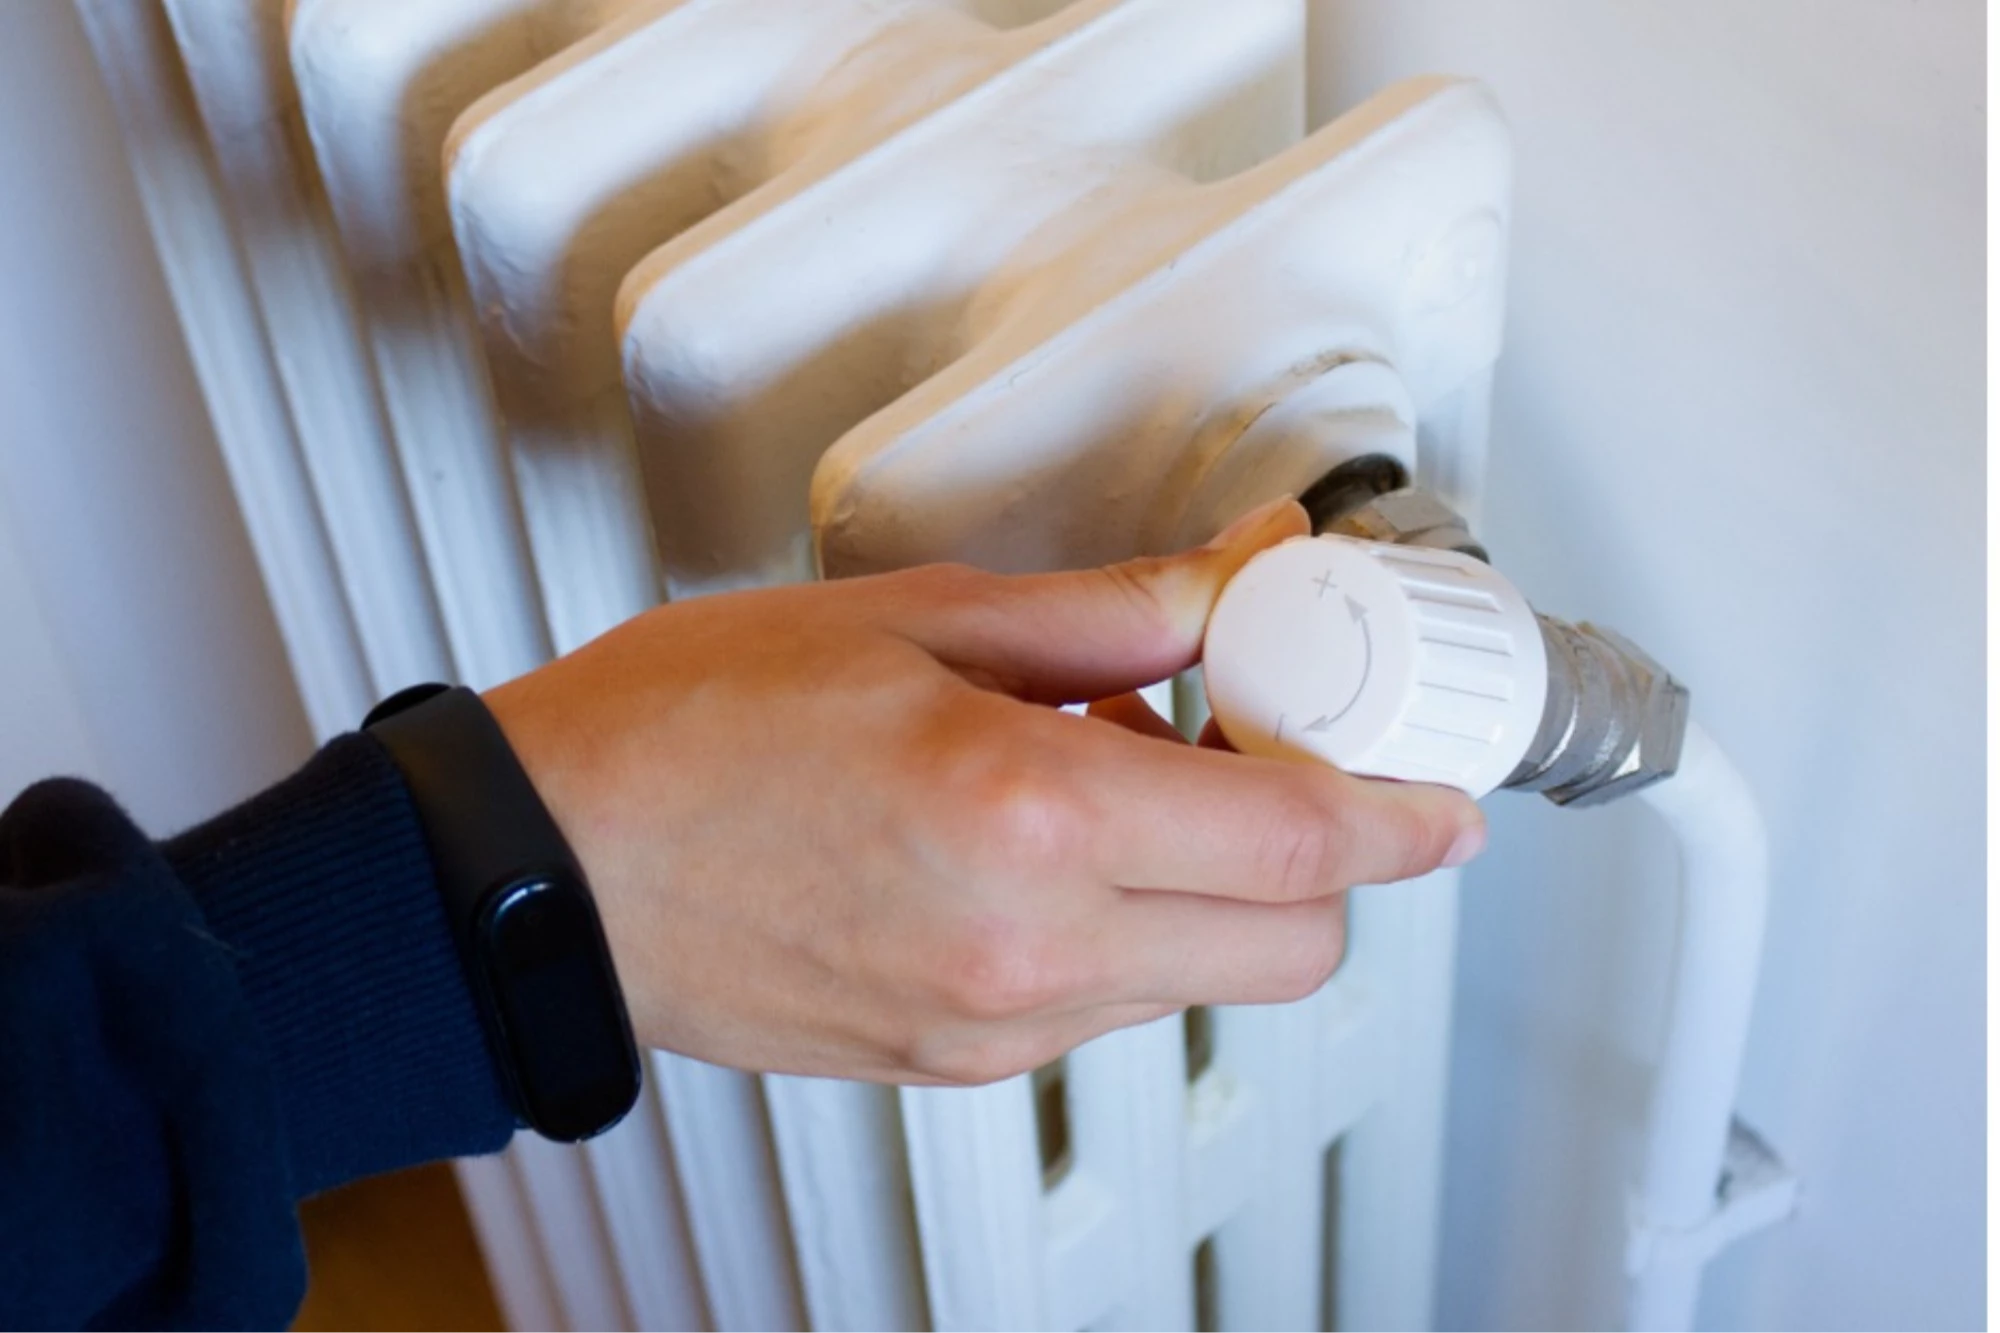 AB „Šiaulių energija“ ragina daugiabučio namo gyventojus renovuoti šildymo ir karšto vandens sistemas pasinaudojant valstybės parama